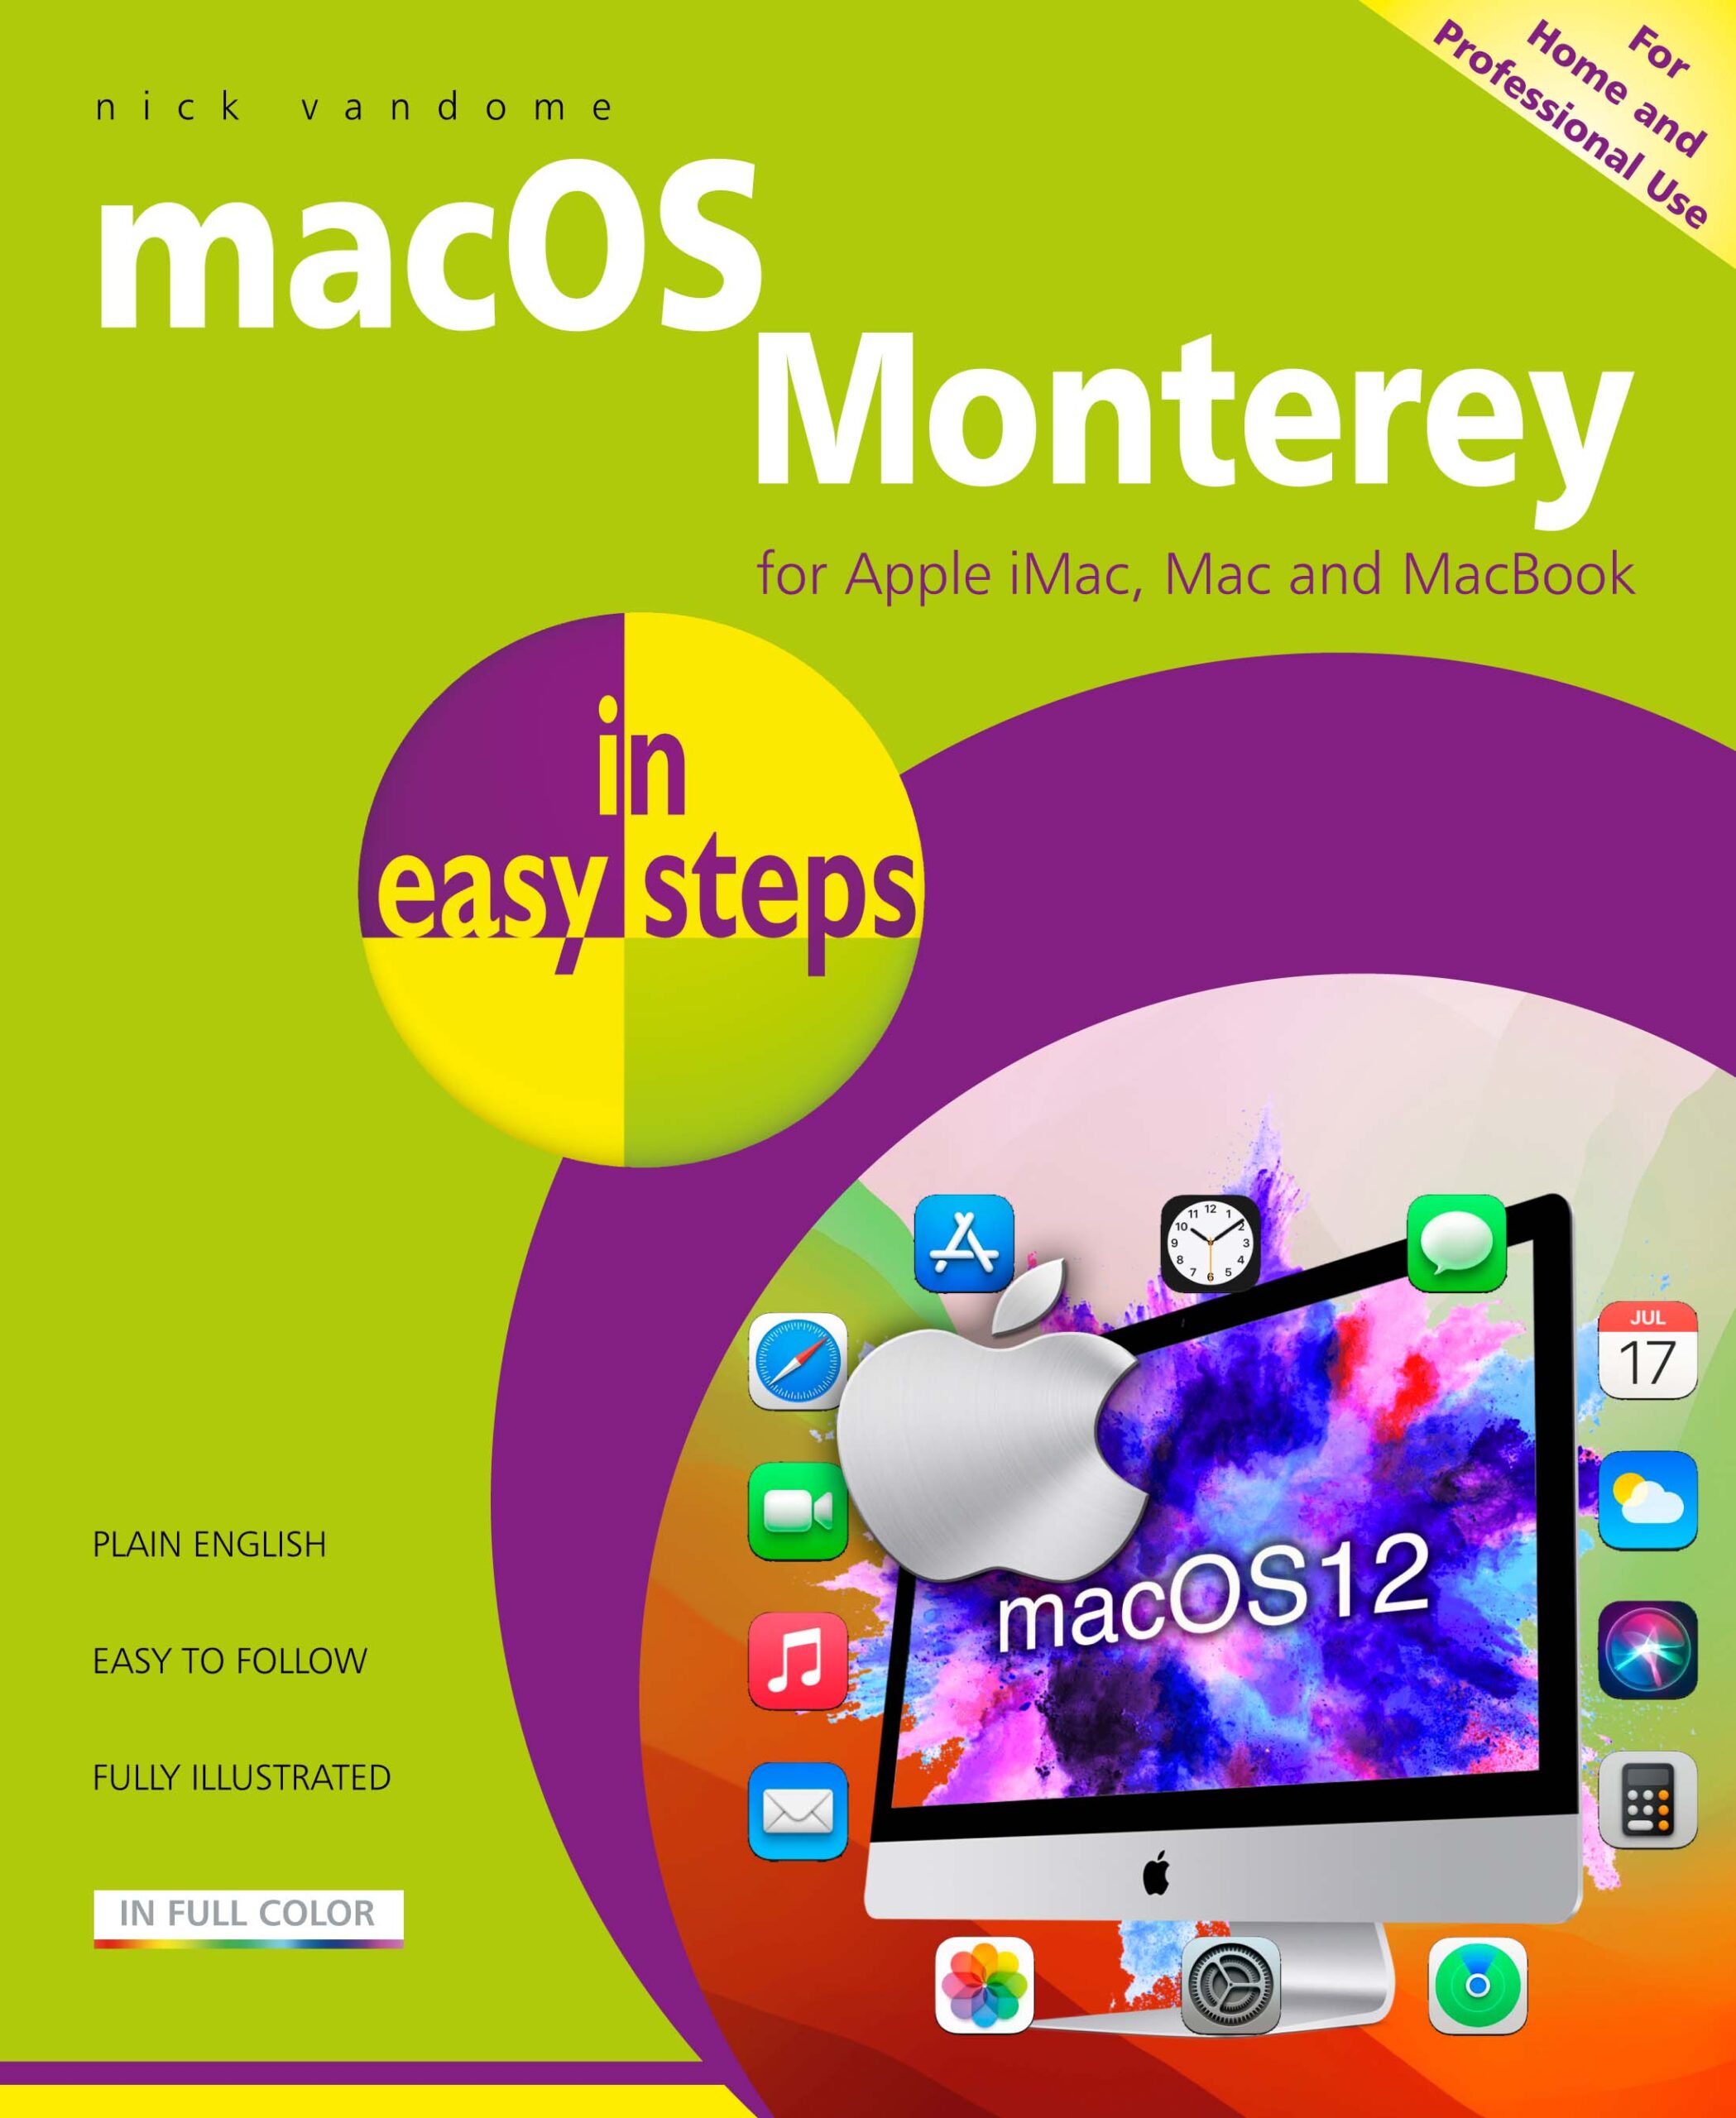 macOS Monterey in easy steps 9781840789461|macOS in easy steps - covers macOS version 12 9781840789461|macOS Monterey in easy steps 9781840789461||